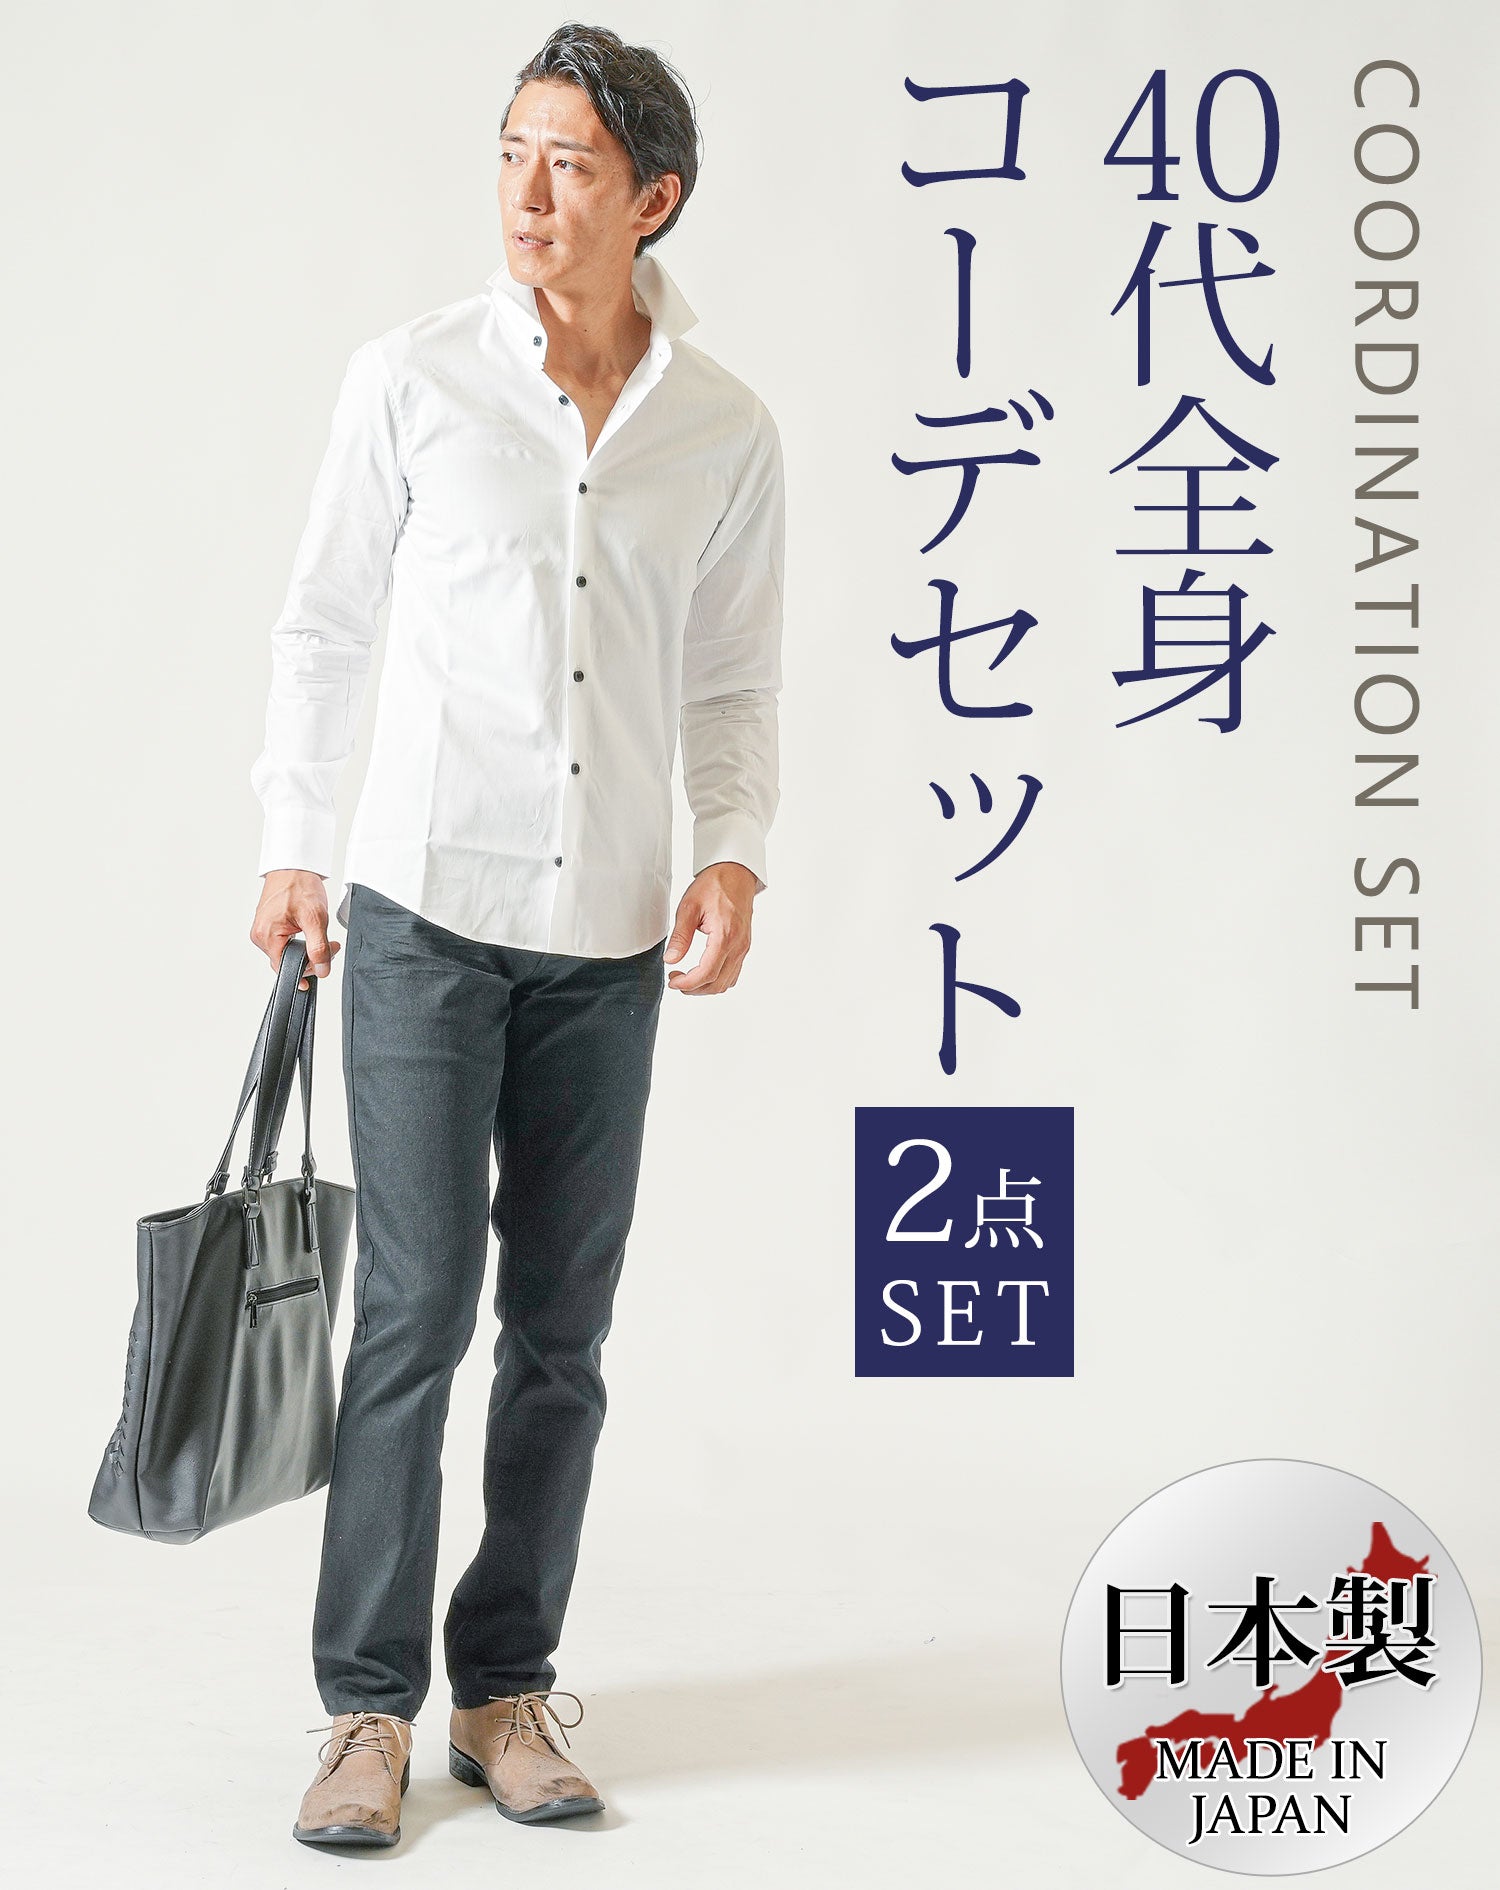 40代 メンズファッション 春服 秋服 2点コーデセット 白長袖日本製